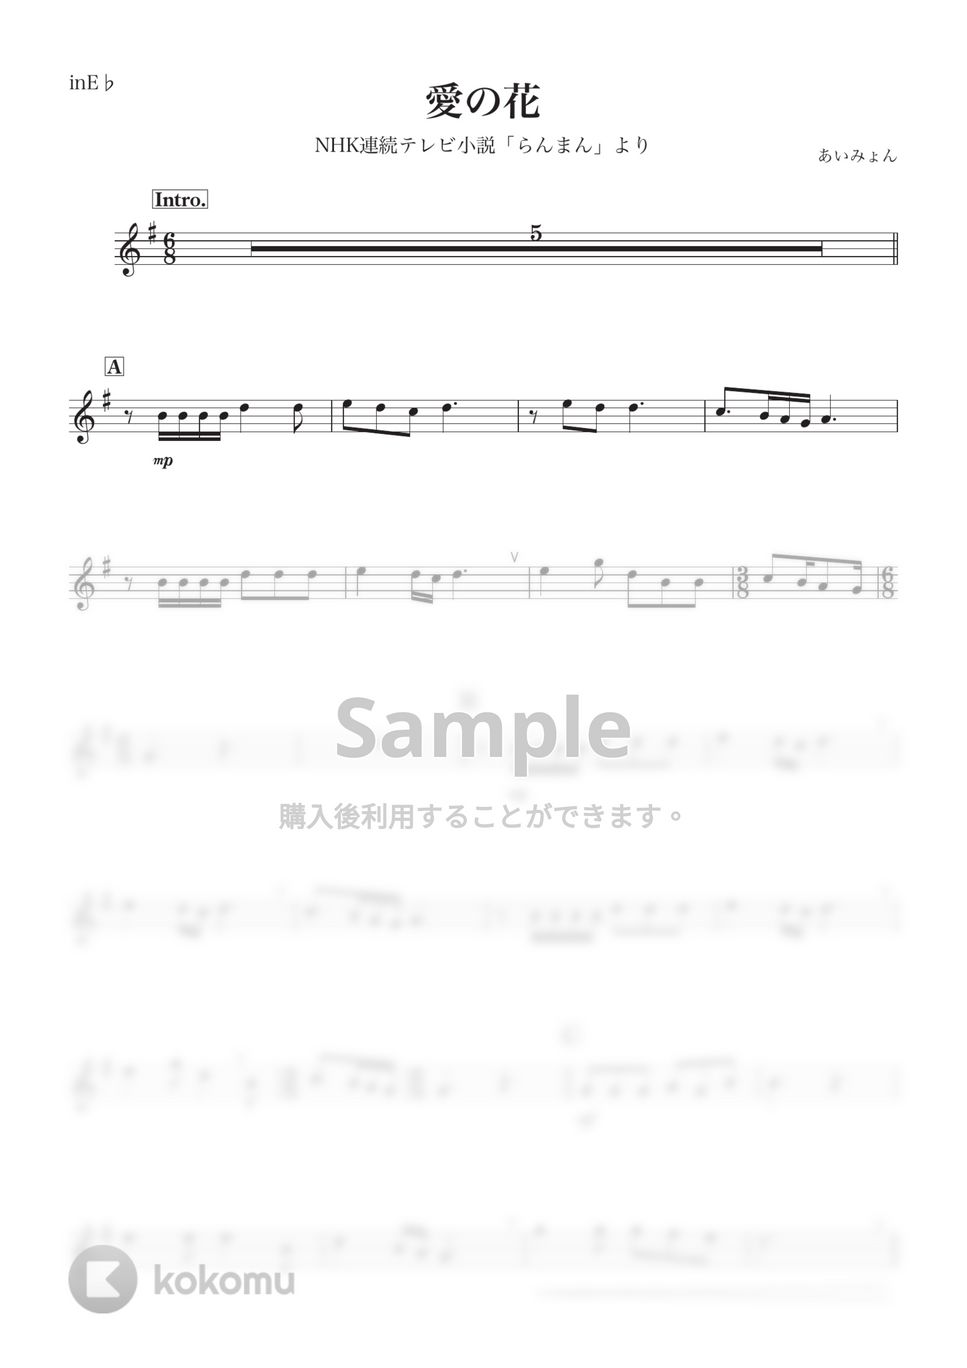 あいみょん - 【らんまん】愛の花 (E♭) by kanamusic